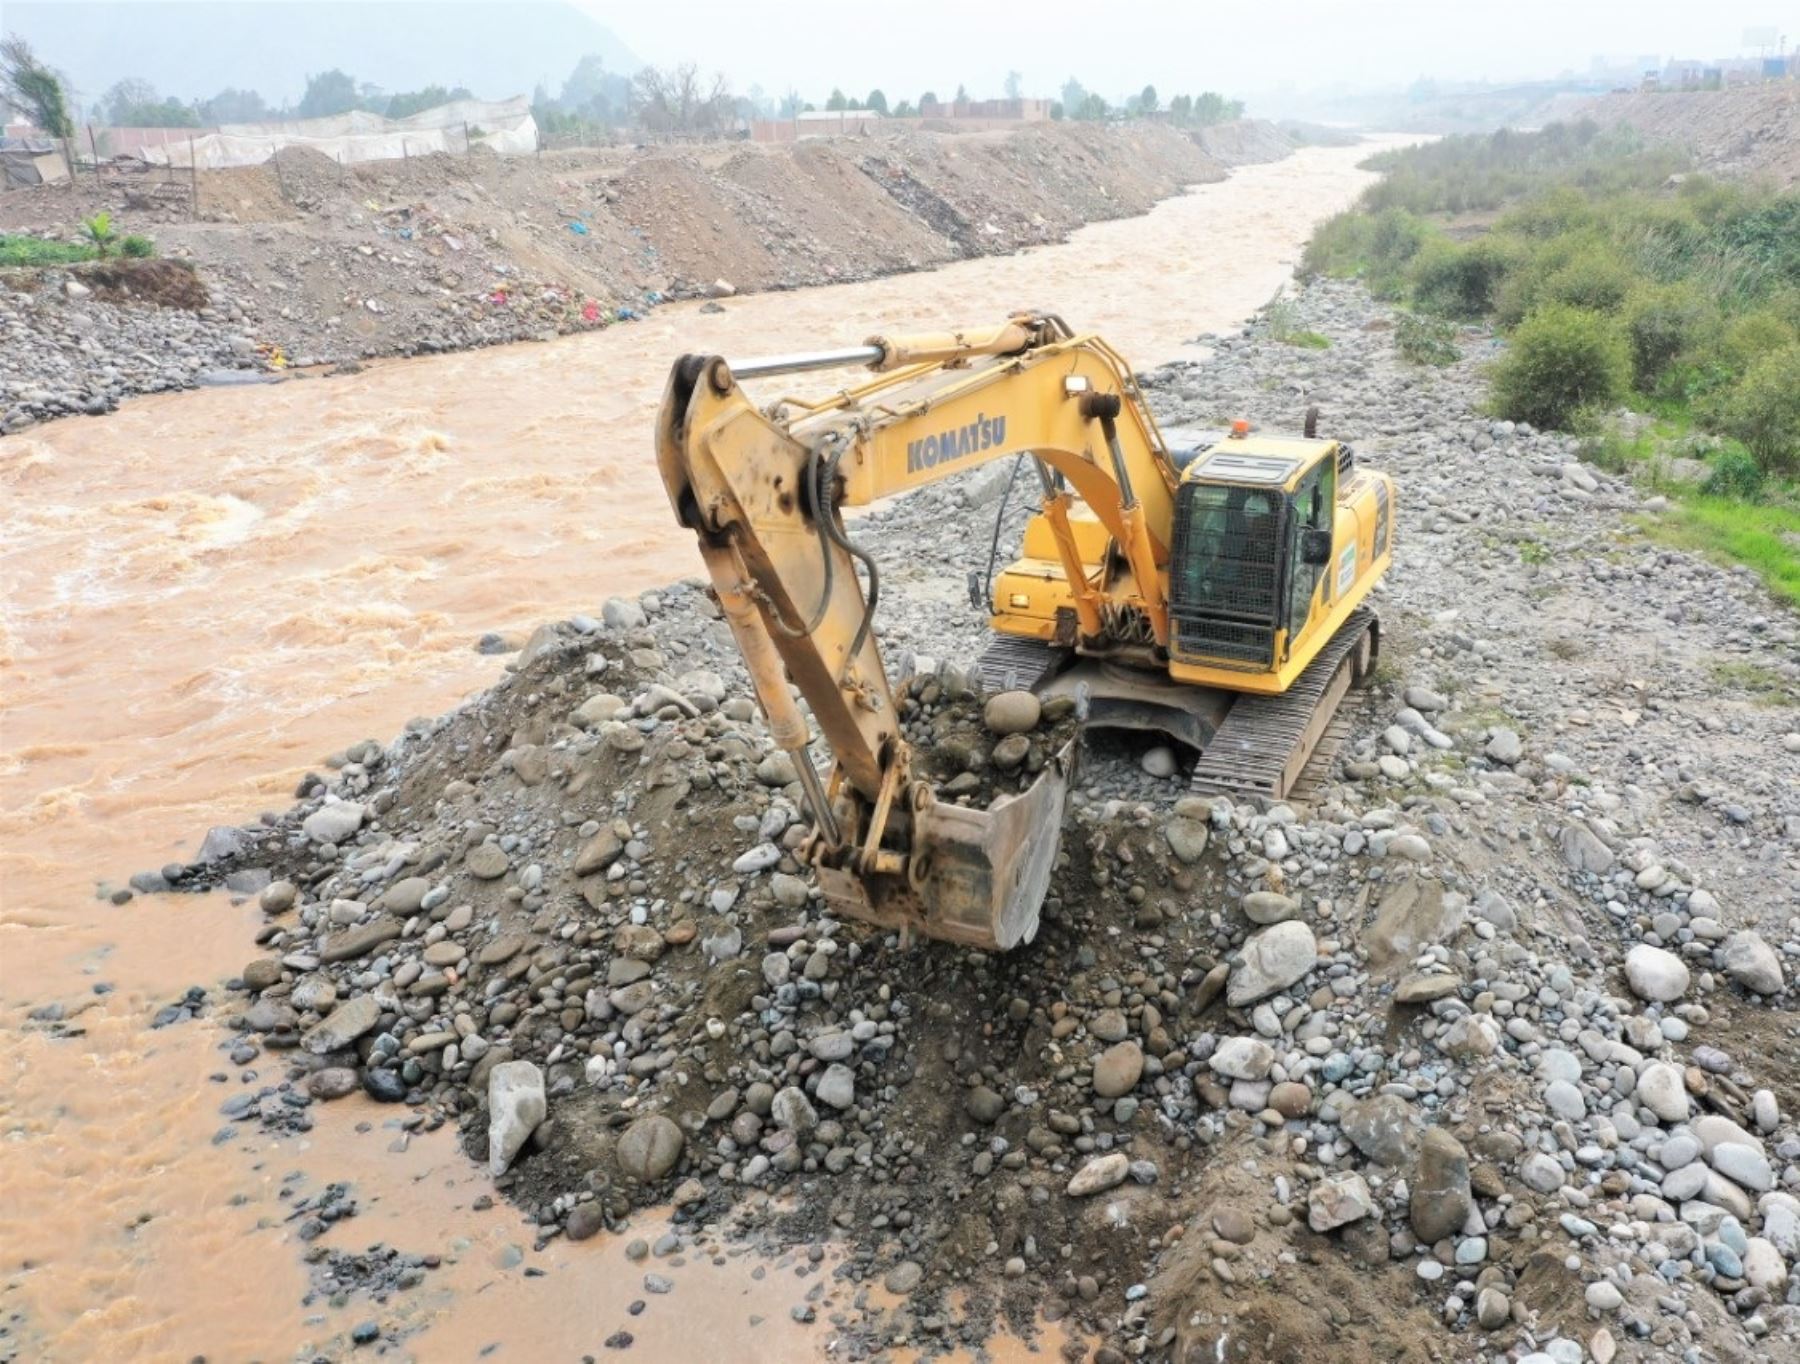 Con apoyo de maquinaria pesada, el Ministerio de Vivienda, Construcción y Saneamiento intensifica las labores de prevención en ríos y quebradas de 12 regiones del país. ANDINA/Difusión